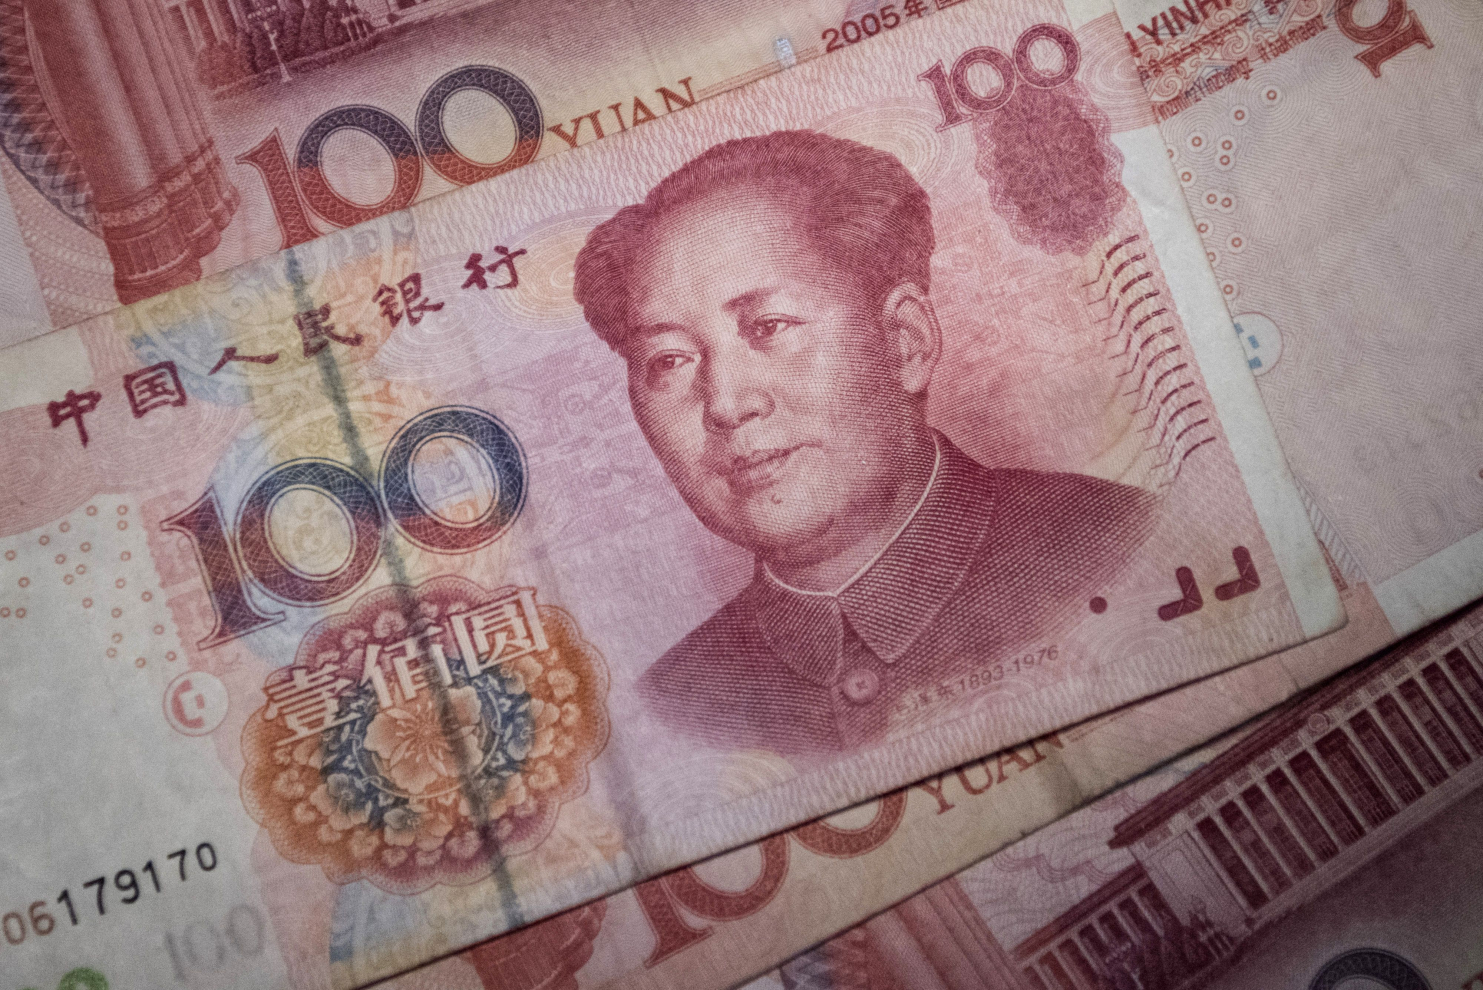 Tình cảnh tồi tệ của giới nhà giàu Trung Quốc và cách họ chuyển tiền ra nước ngoài